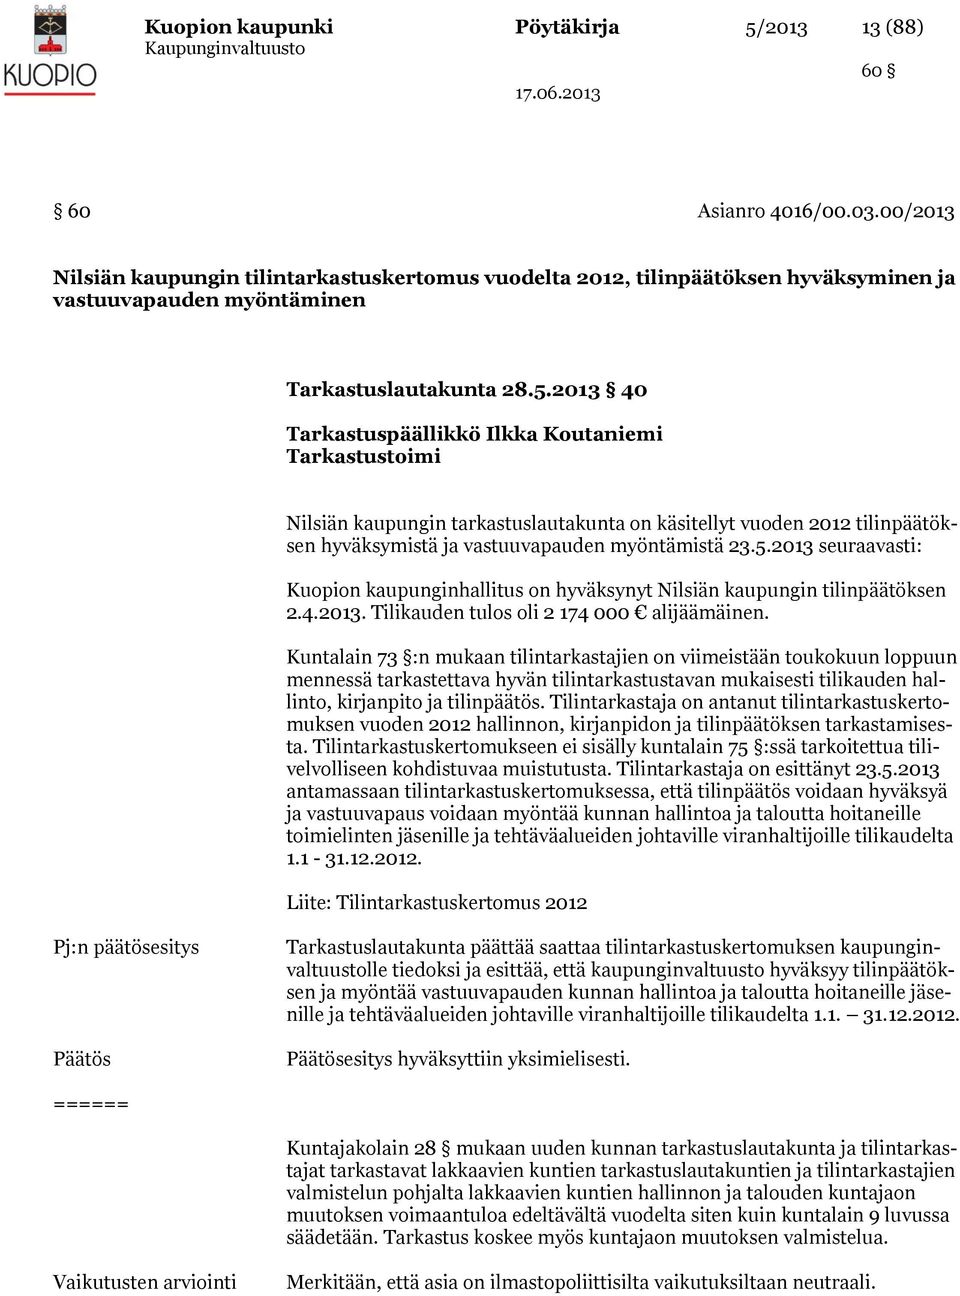 2013 40 Tarkastuspäällikkö Ilkka Koutaniemi Tarkastustoimi Nilsiän kaupungin tarkastuslautakunta on käsitellyt vuoden 2012 tilinpäätöksen hyväksymistä ja vastuuvapauden myöntämistä 23.5.